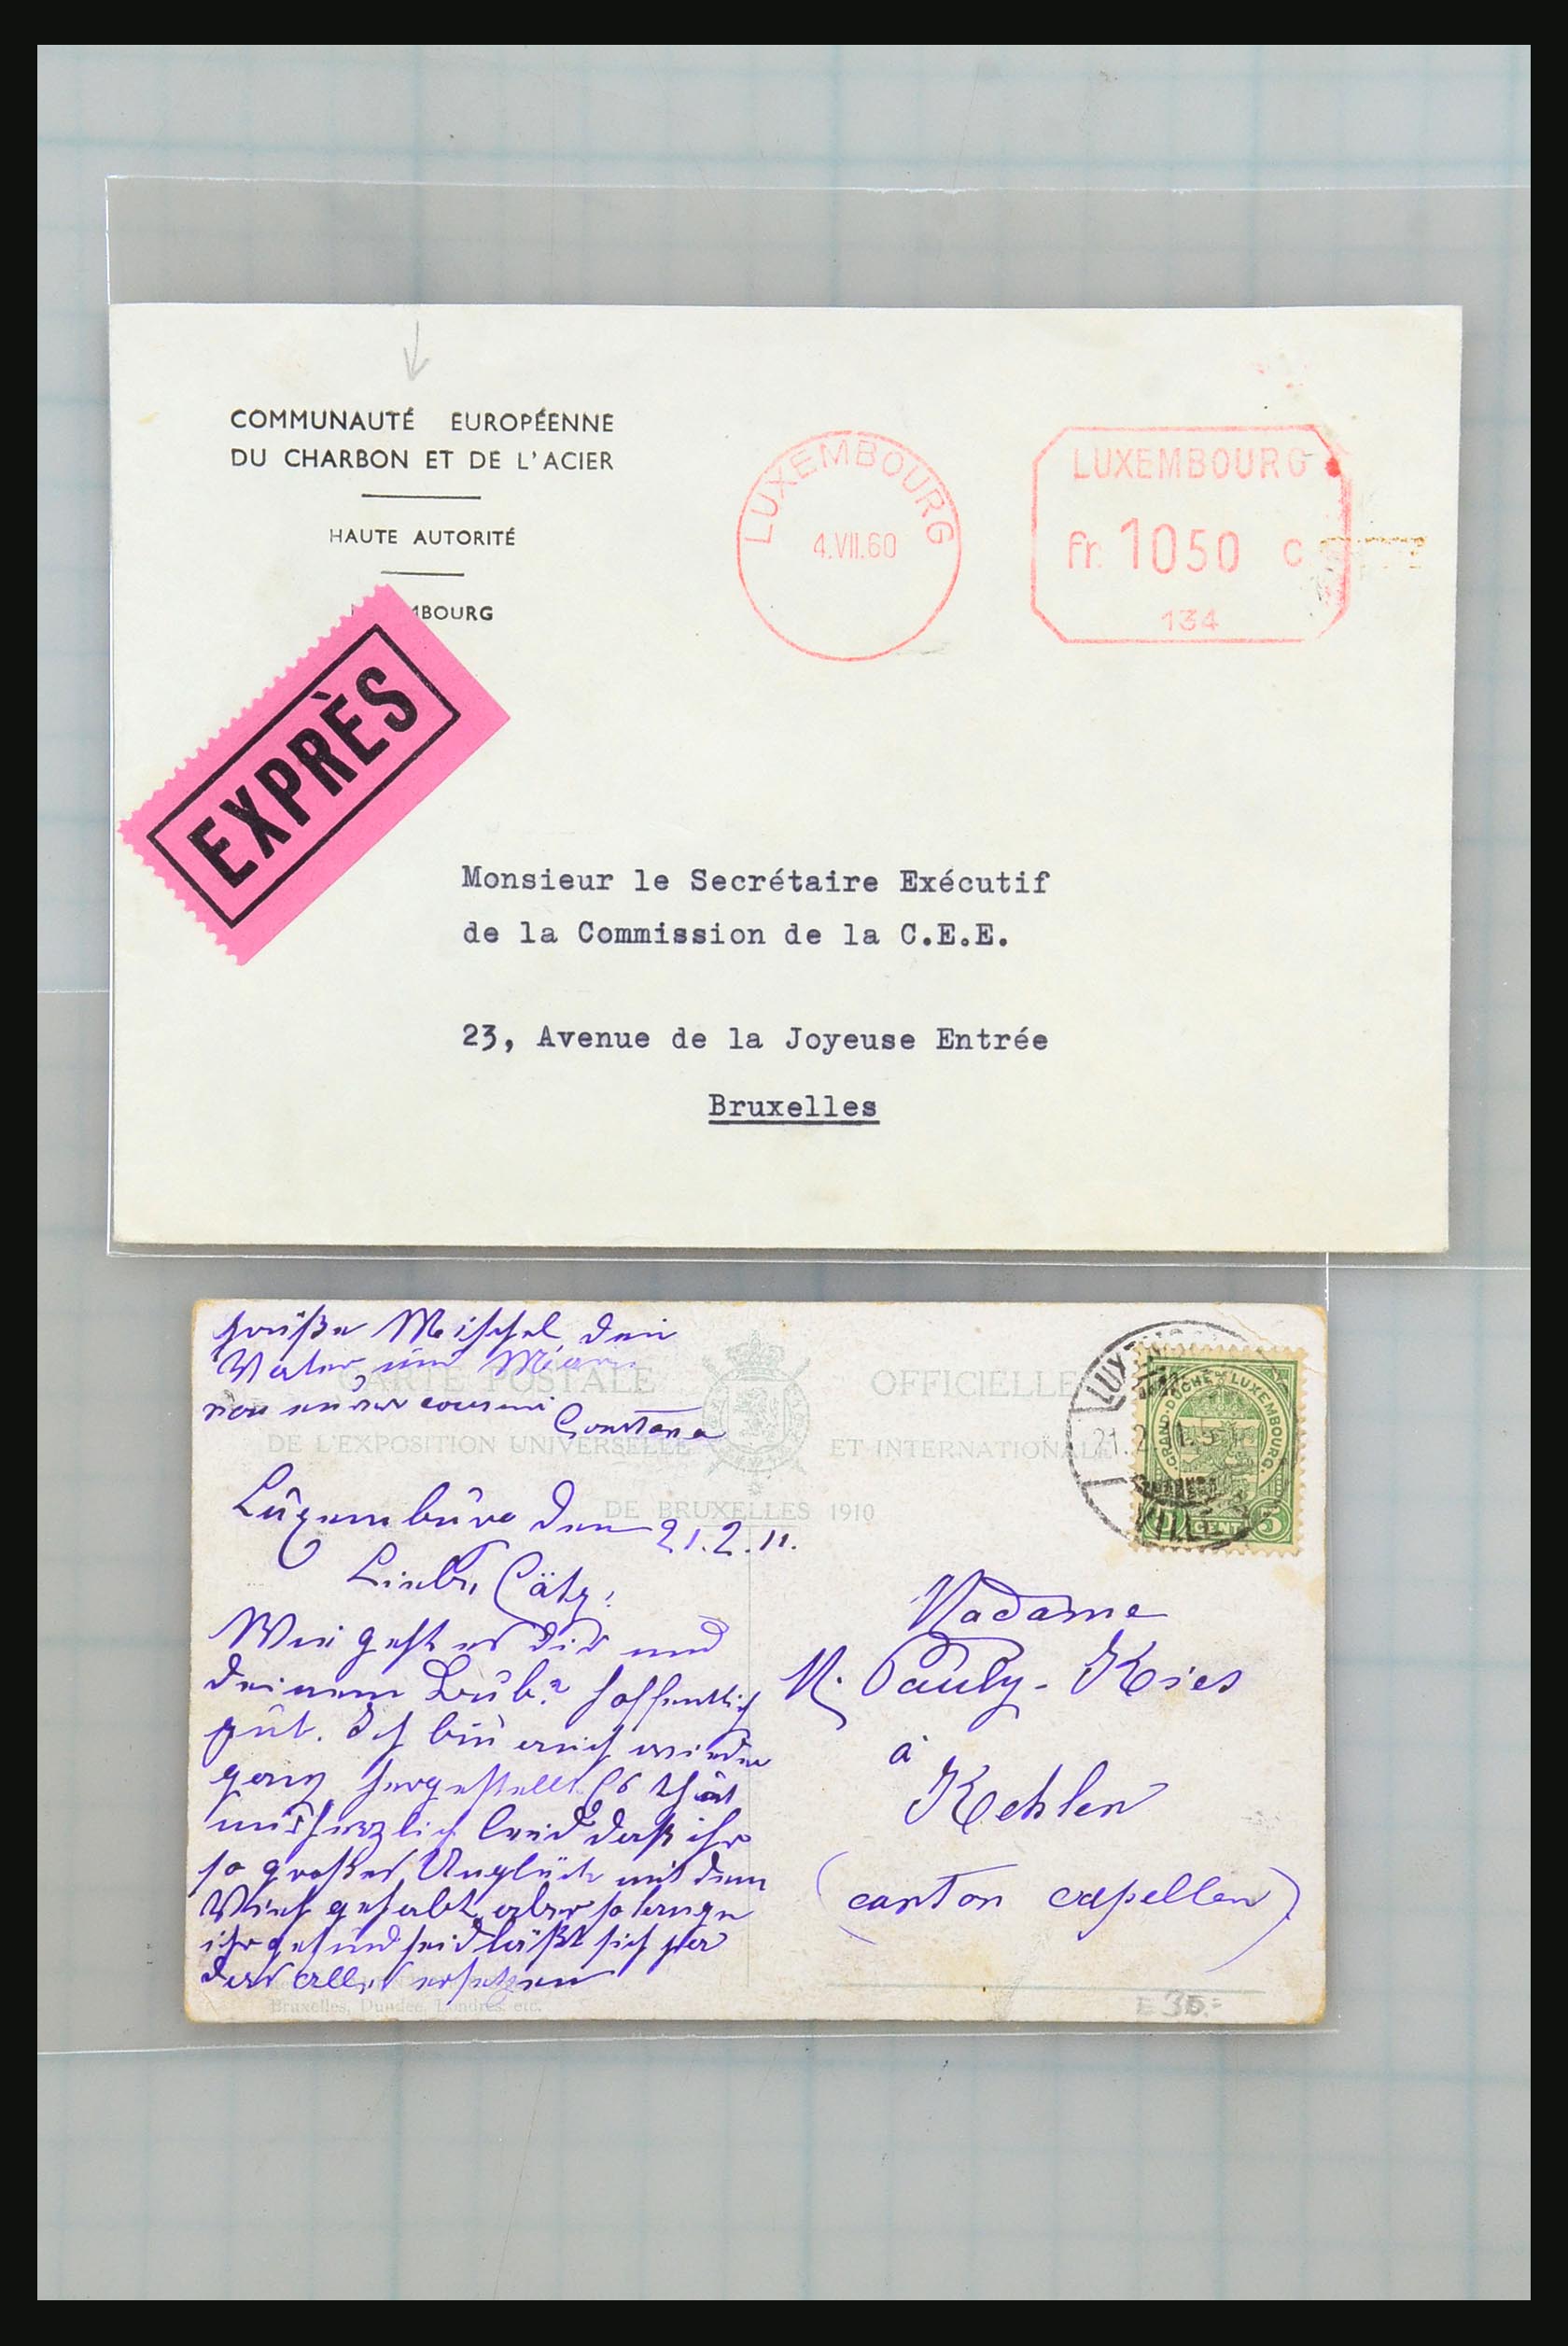 31358 007 - 31358 Portugal/Luxemburg/Griekenland brieven 1880-1960.